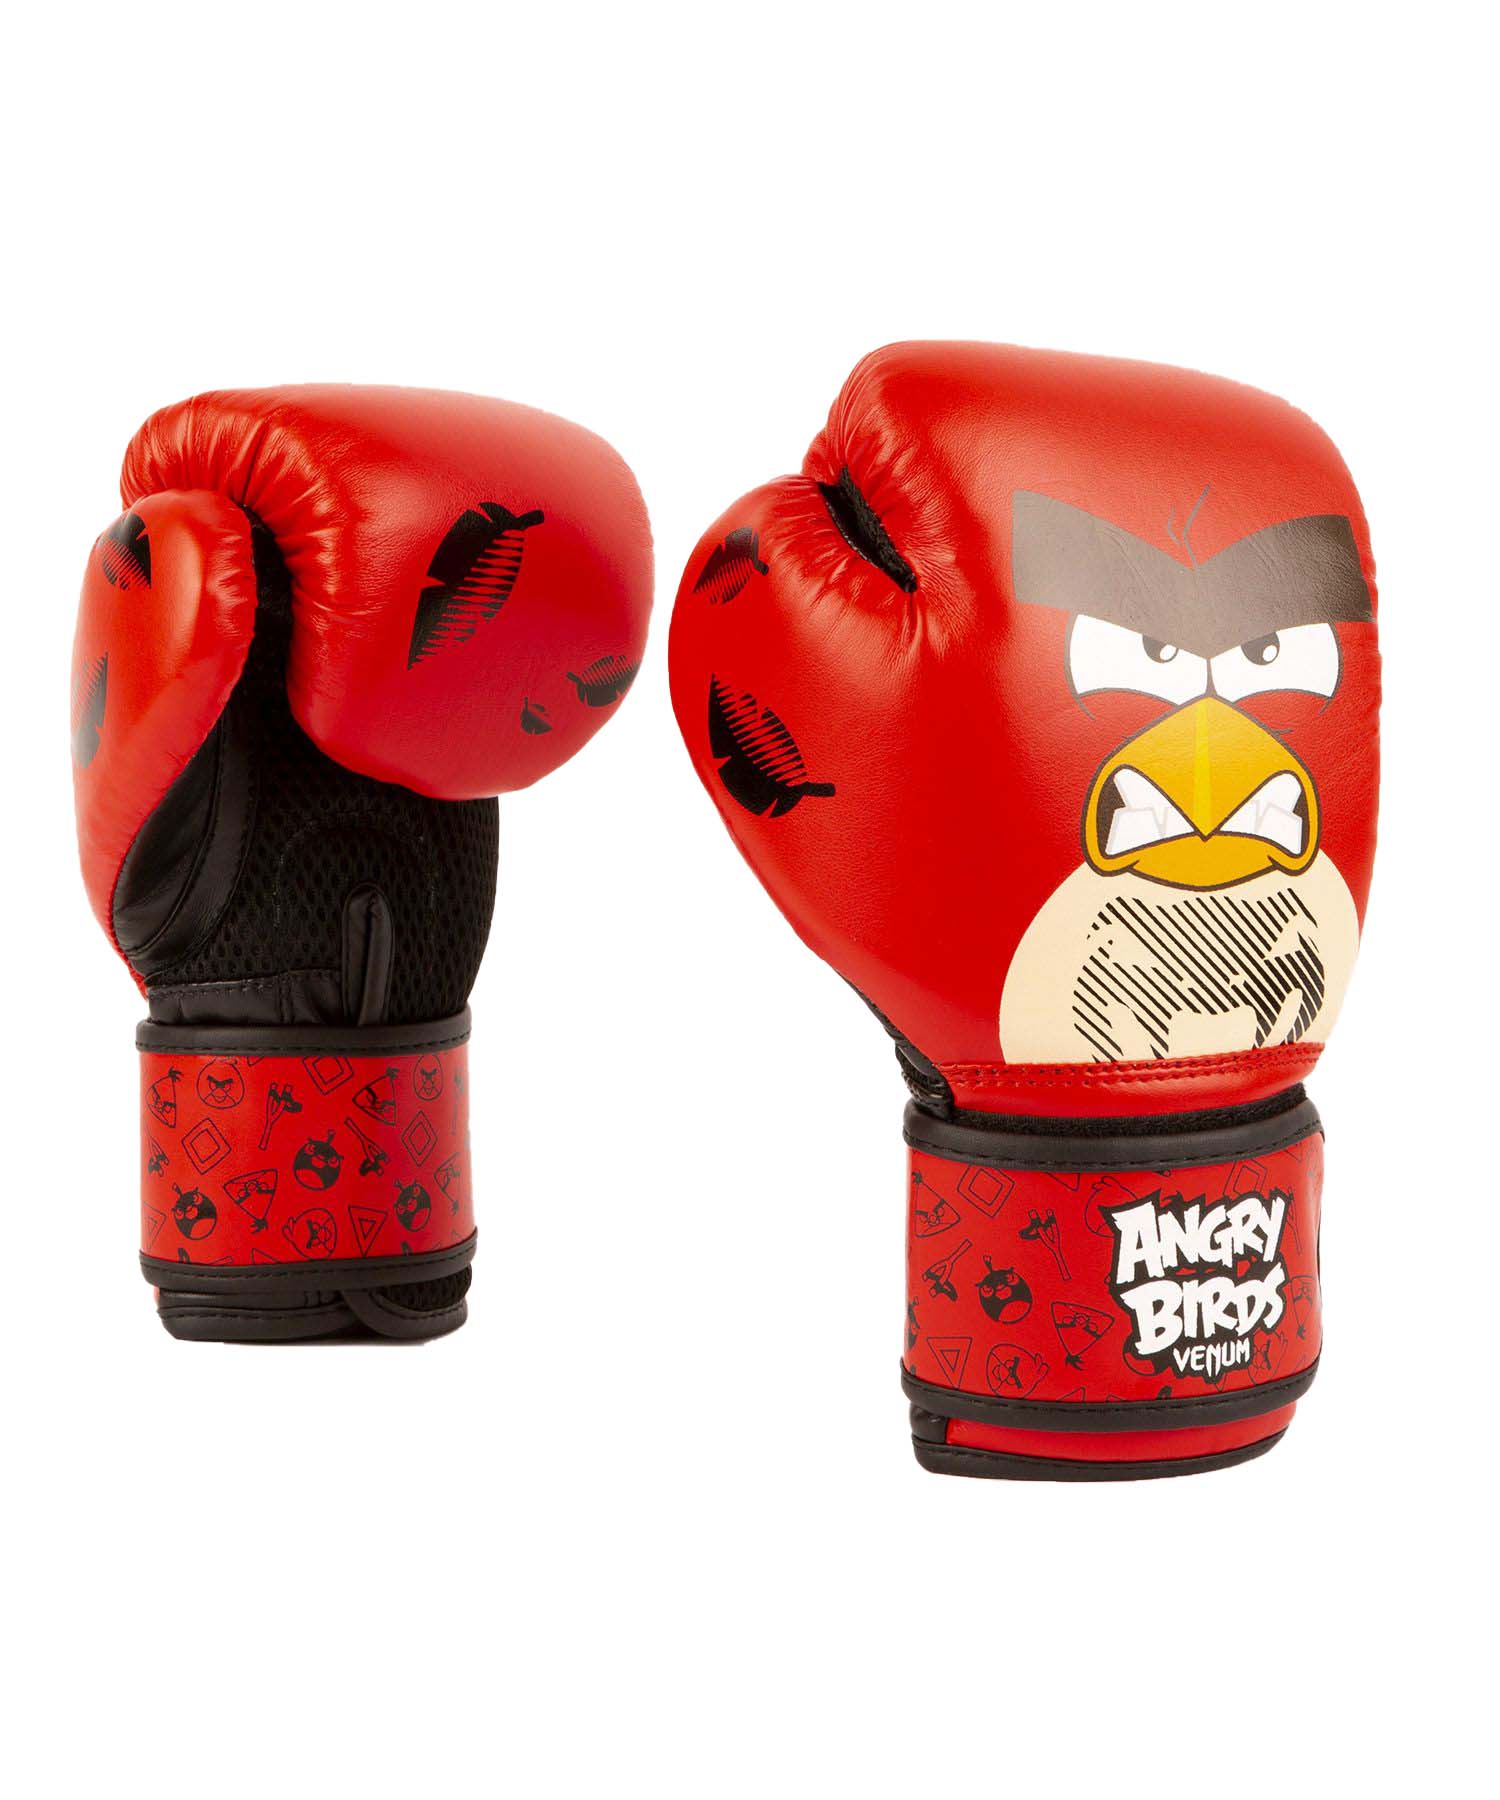 Dětské boxerské rukavice Angry Birds VENUM červené vel. 4 oz